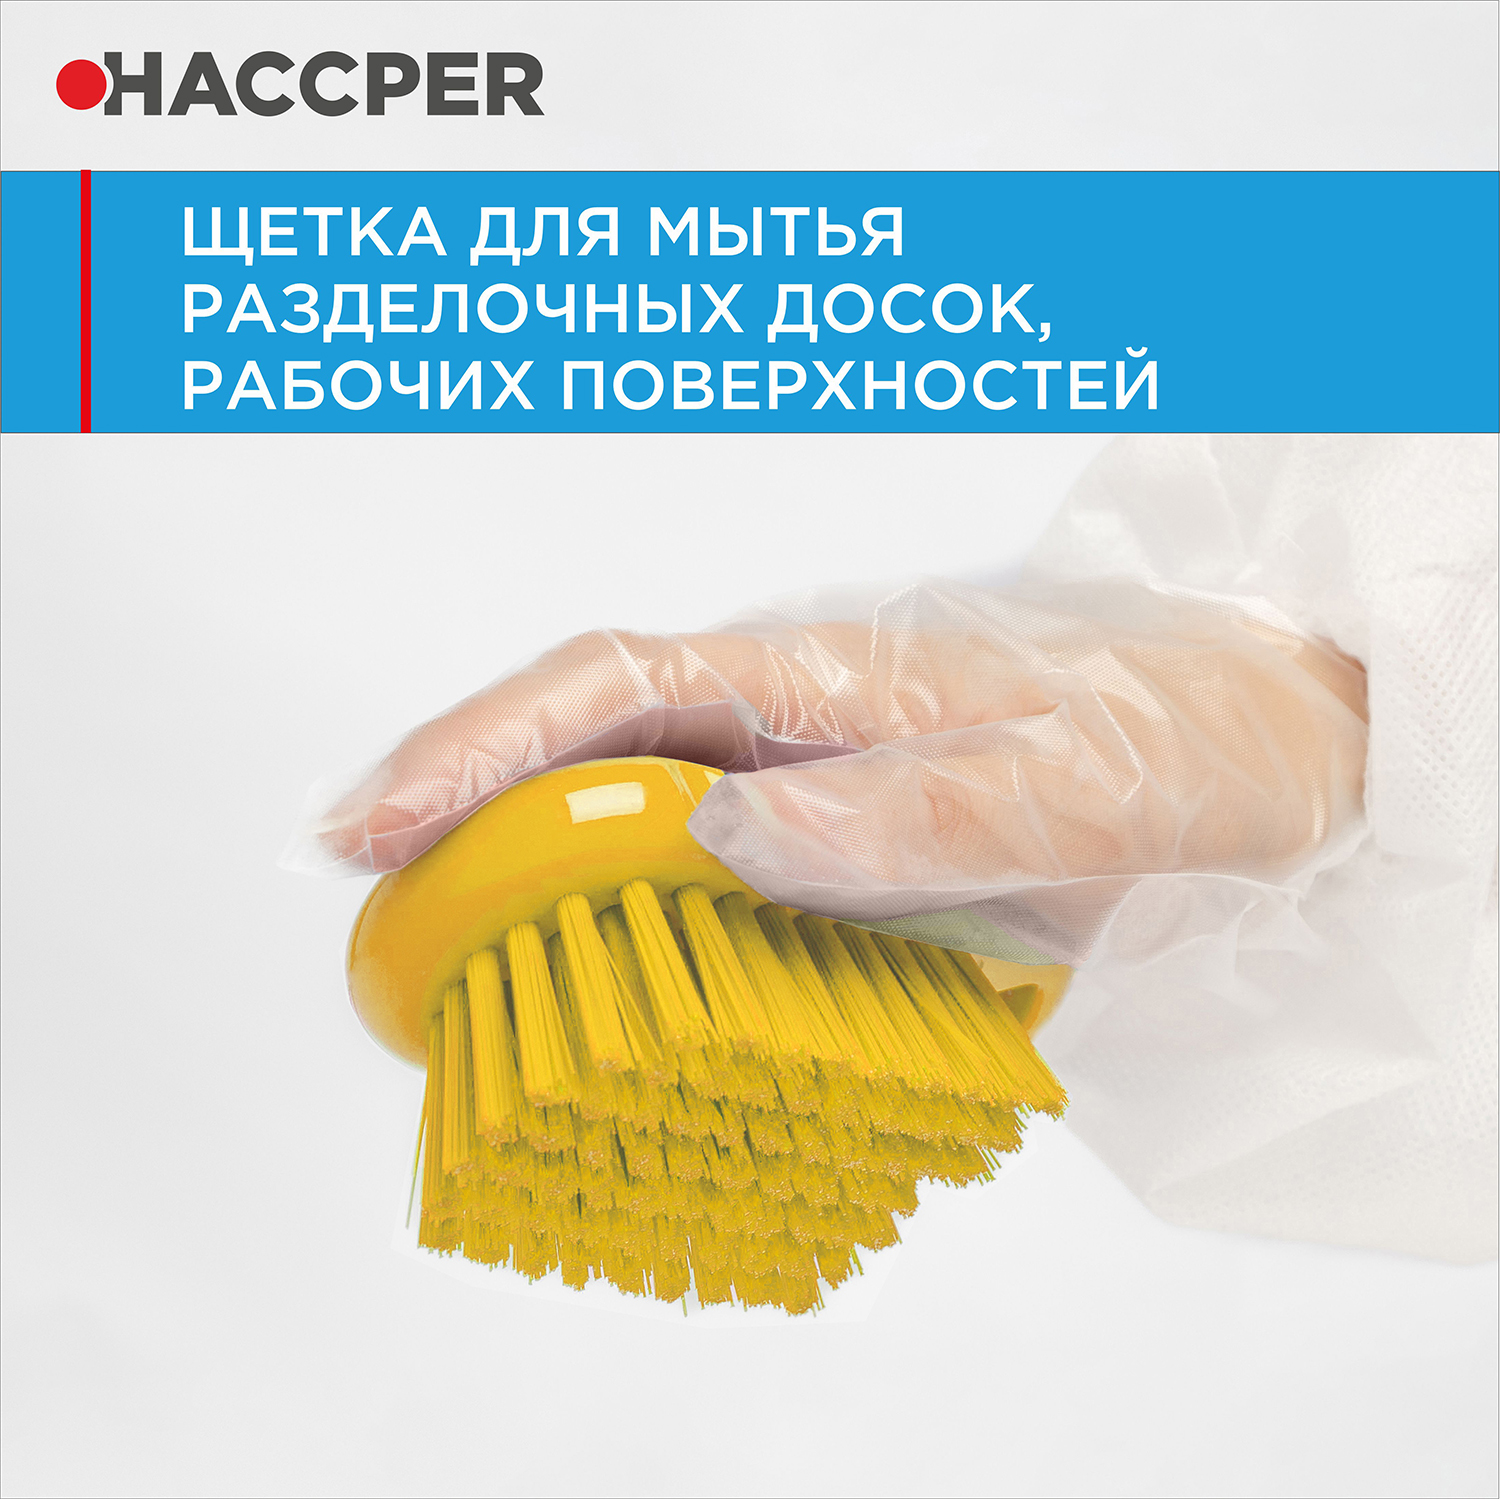 Щетка HACCPER для мытья разделочных досок, рабочих поверхностей, желтый